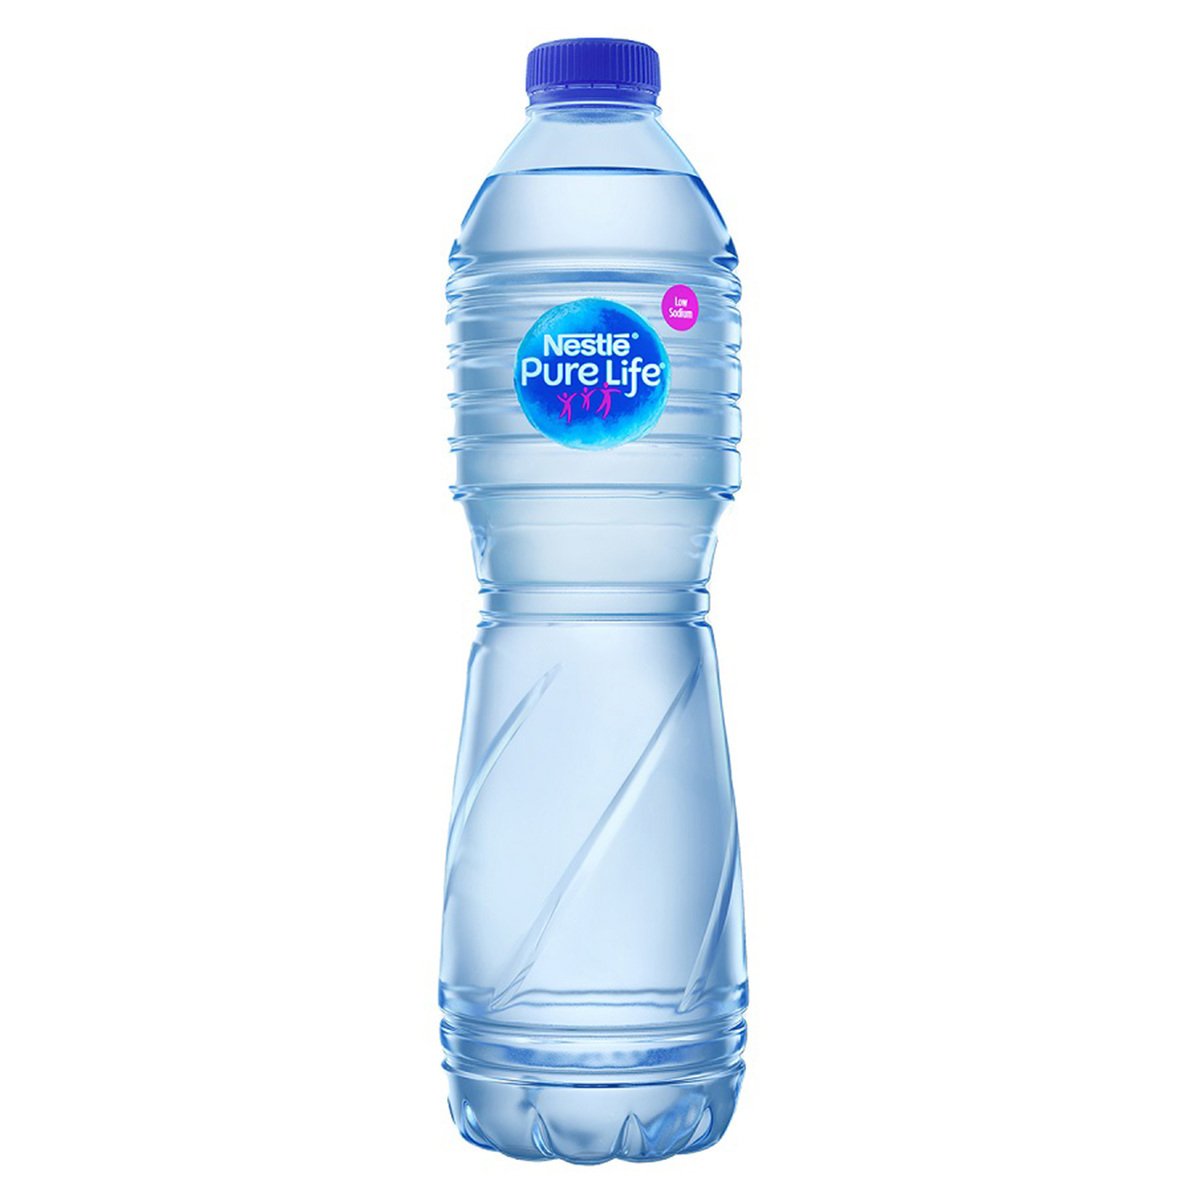 اشتري قم بشراء نستلة بيور لايف مياه شرب معبأه 1.5 لتر Online at Best Price من الموقع - من لولو هايبر ماركت Mineral /Spring Wate في السعودية